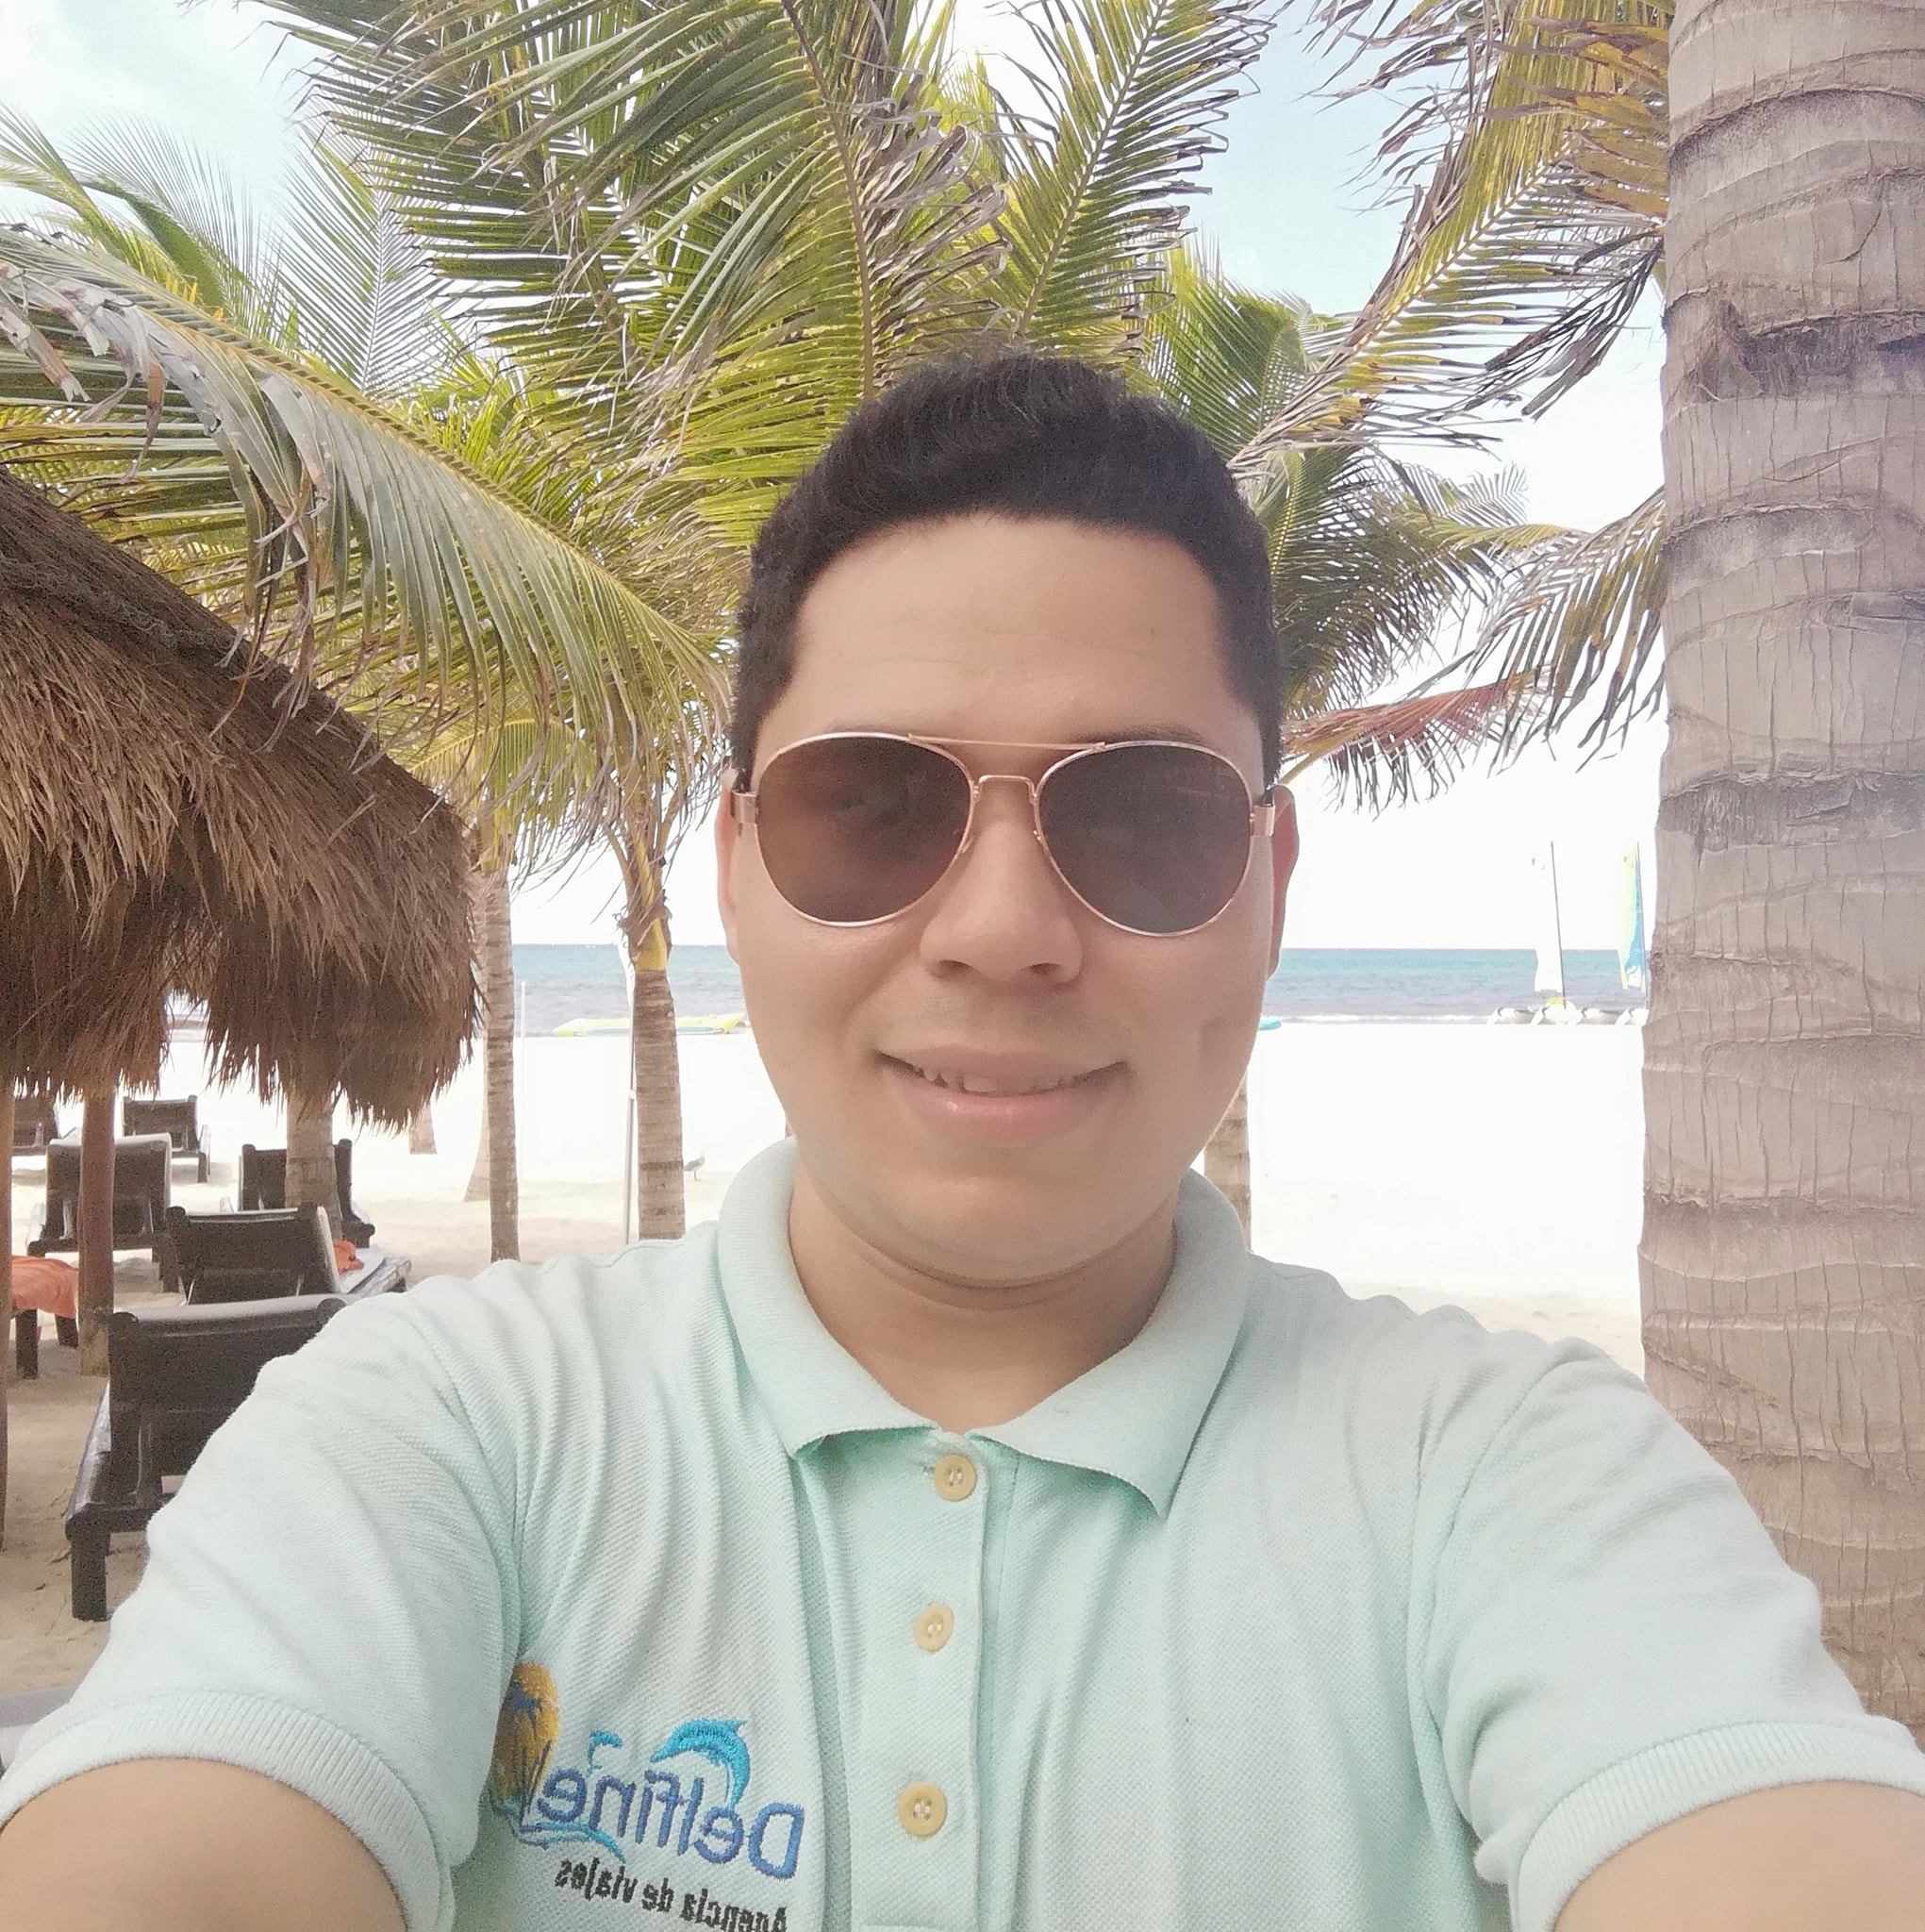 Agencia de viajes Delfinely Campeche / Fundador de la agencia